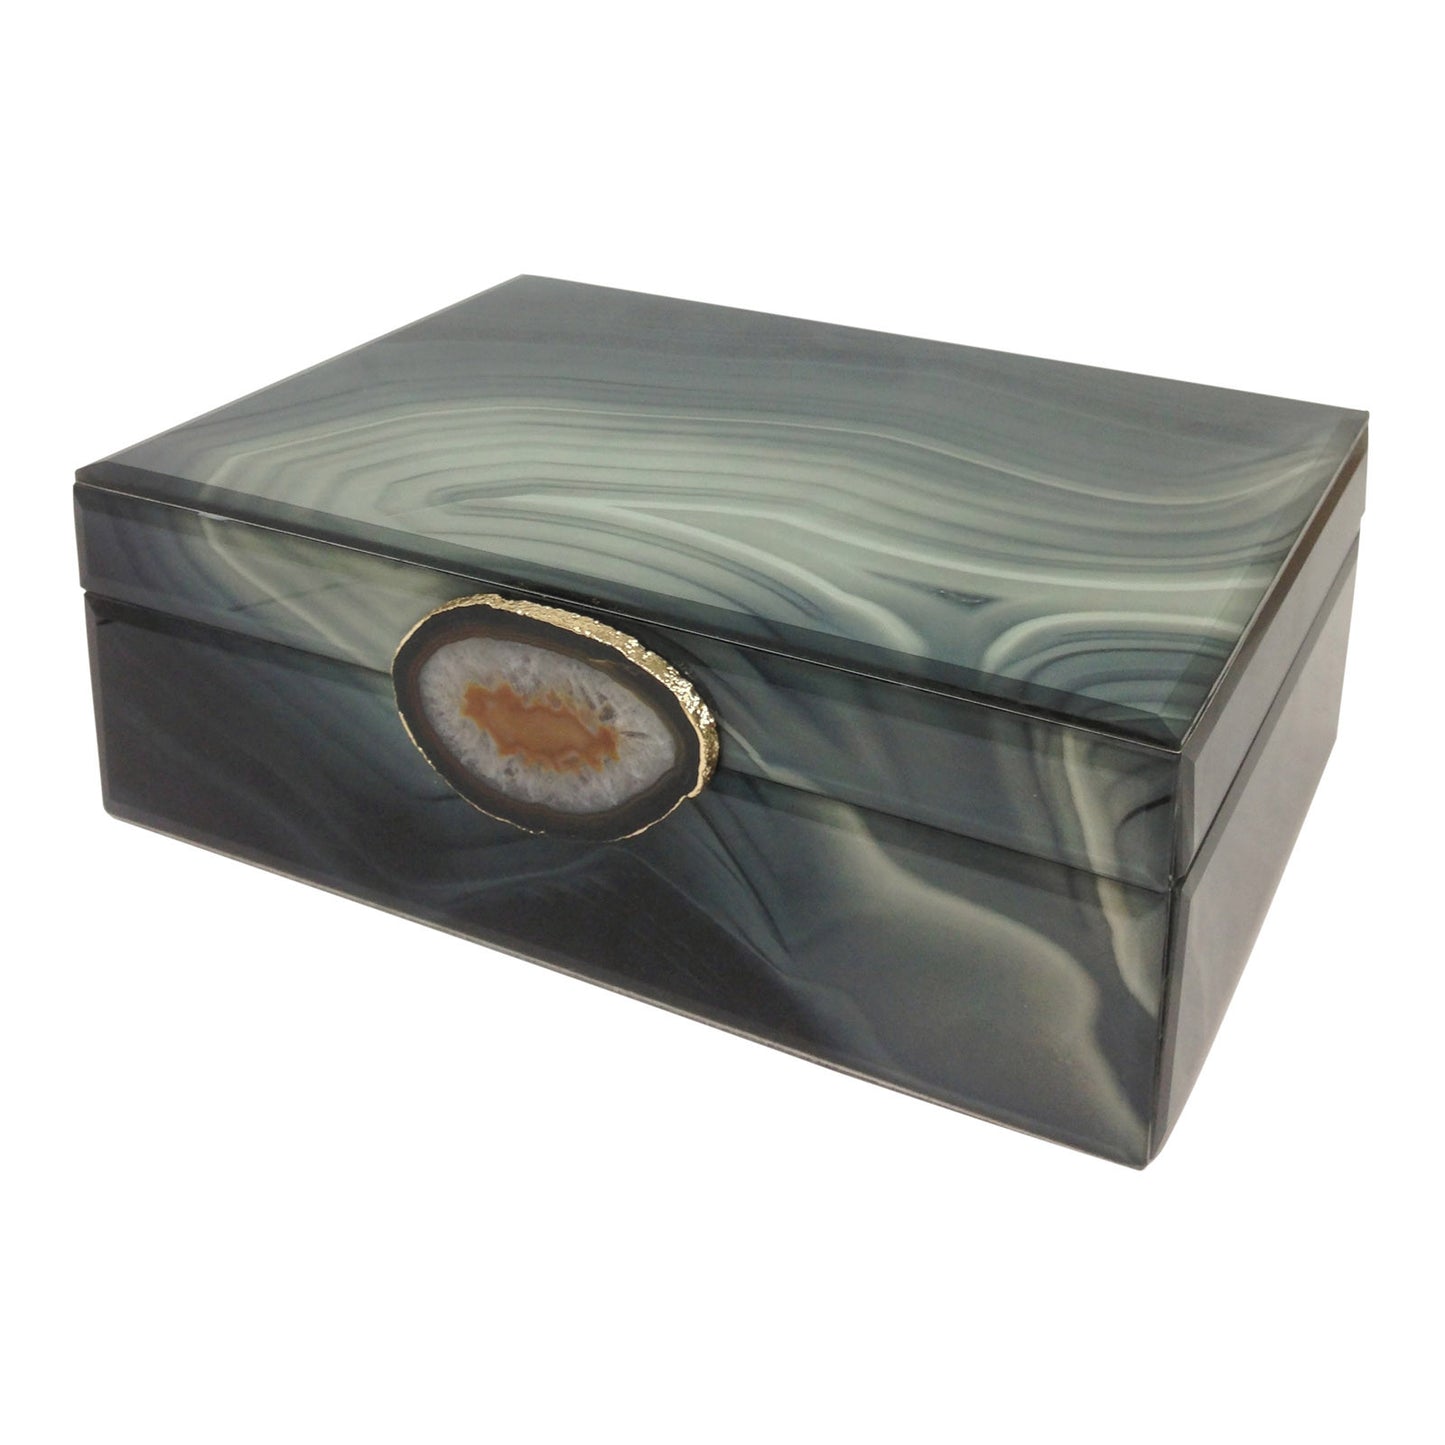 Marble-Like Finished Glass Keepsake Box with Stone Pendant (Small, Large)